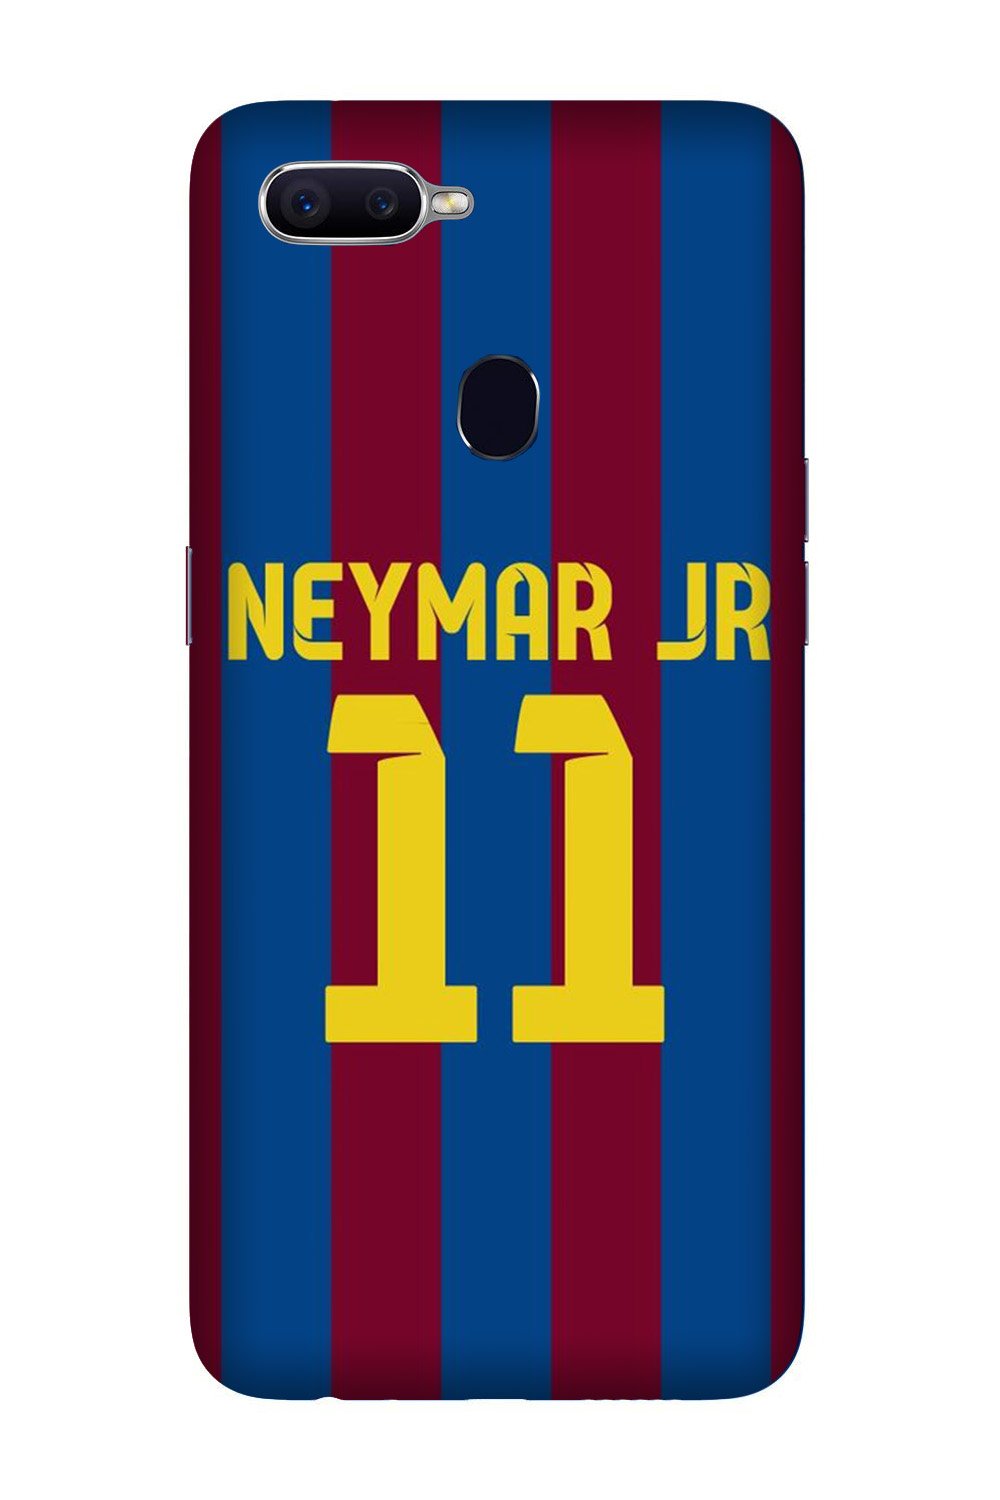 Neymar Jr Case for Oppo F9 Pro(Design - 162)